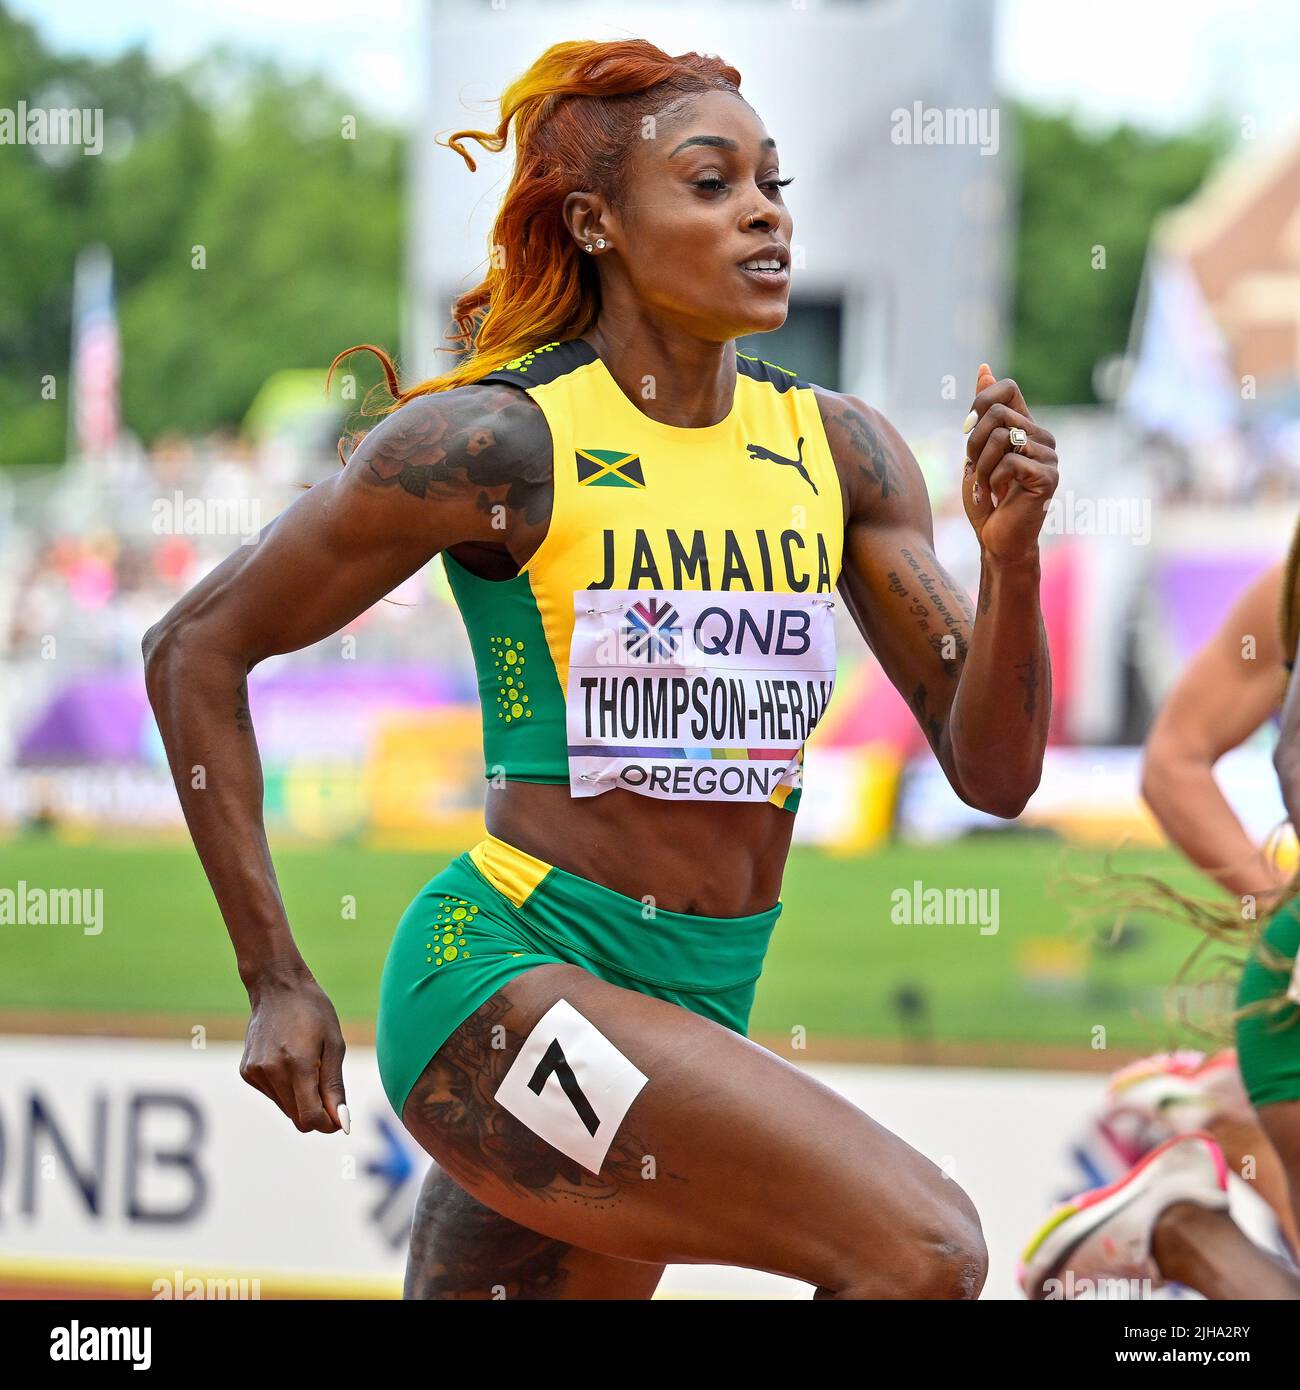 EUGENE, ÉTATS-UNIS - JUILLET 16: Elaine Thompson-Herah de Jamaïque en compétition sur les 100 mètres féminins pendant les Championnats du monde d'athlétisme sur 16 juillet 2022 à Eugene, États-Unis (photo par Andy Astfalck/BSR Agency) Atletiekunie Banque D'Images